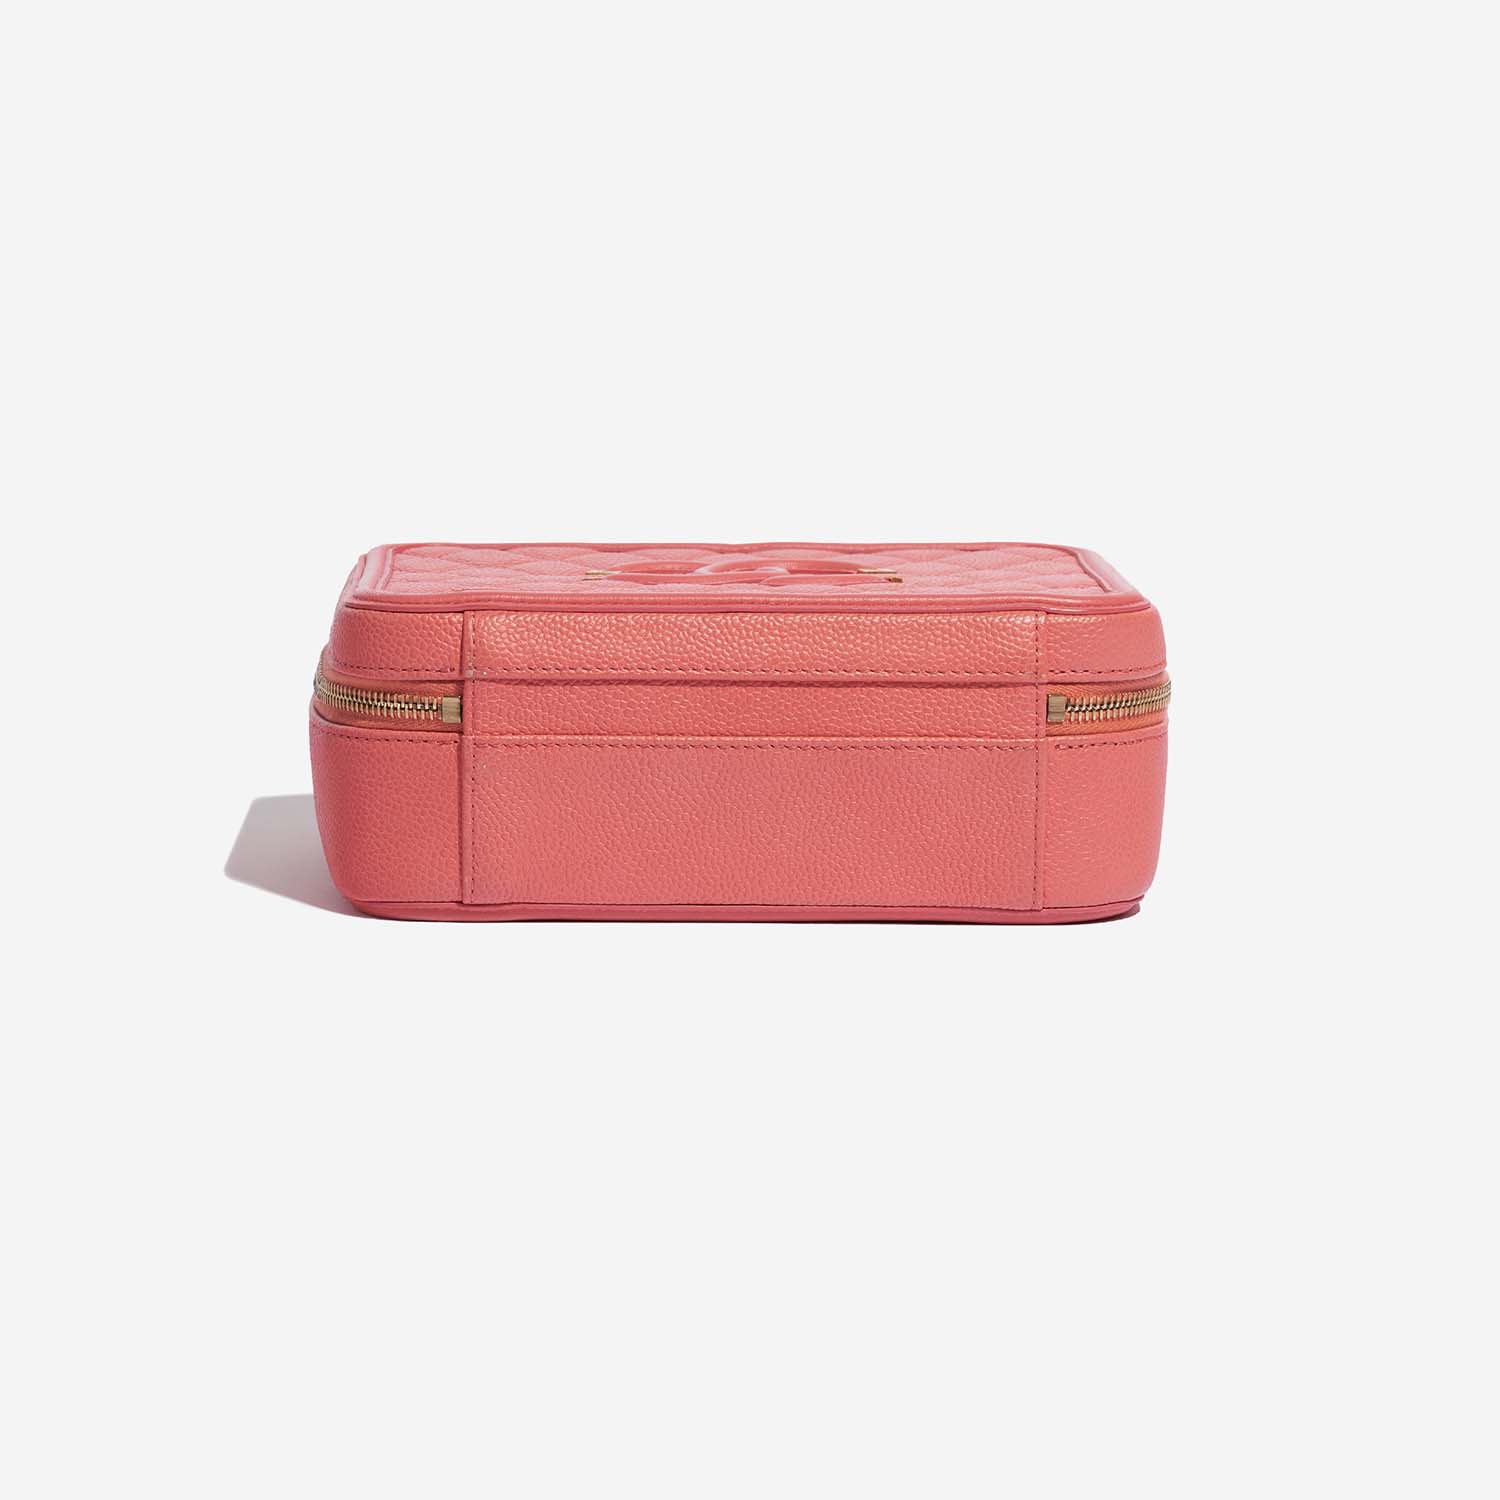 Chanel Vanity Medium Pink Bottom | Verkaufen Sie Ihre Designer-Tasche auf Saclab.com